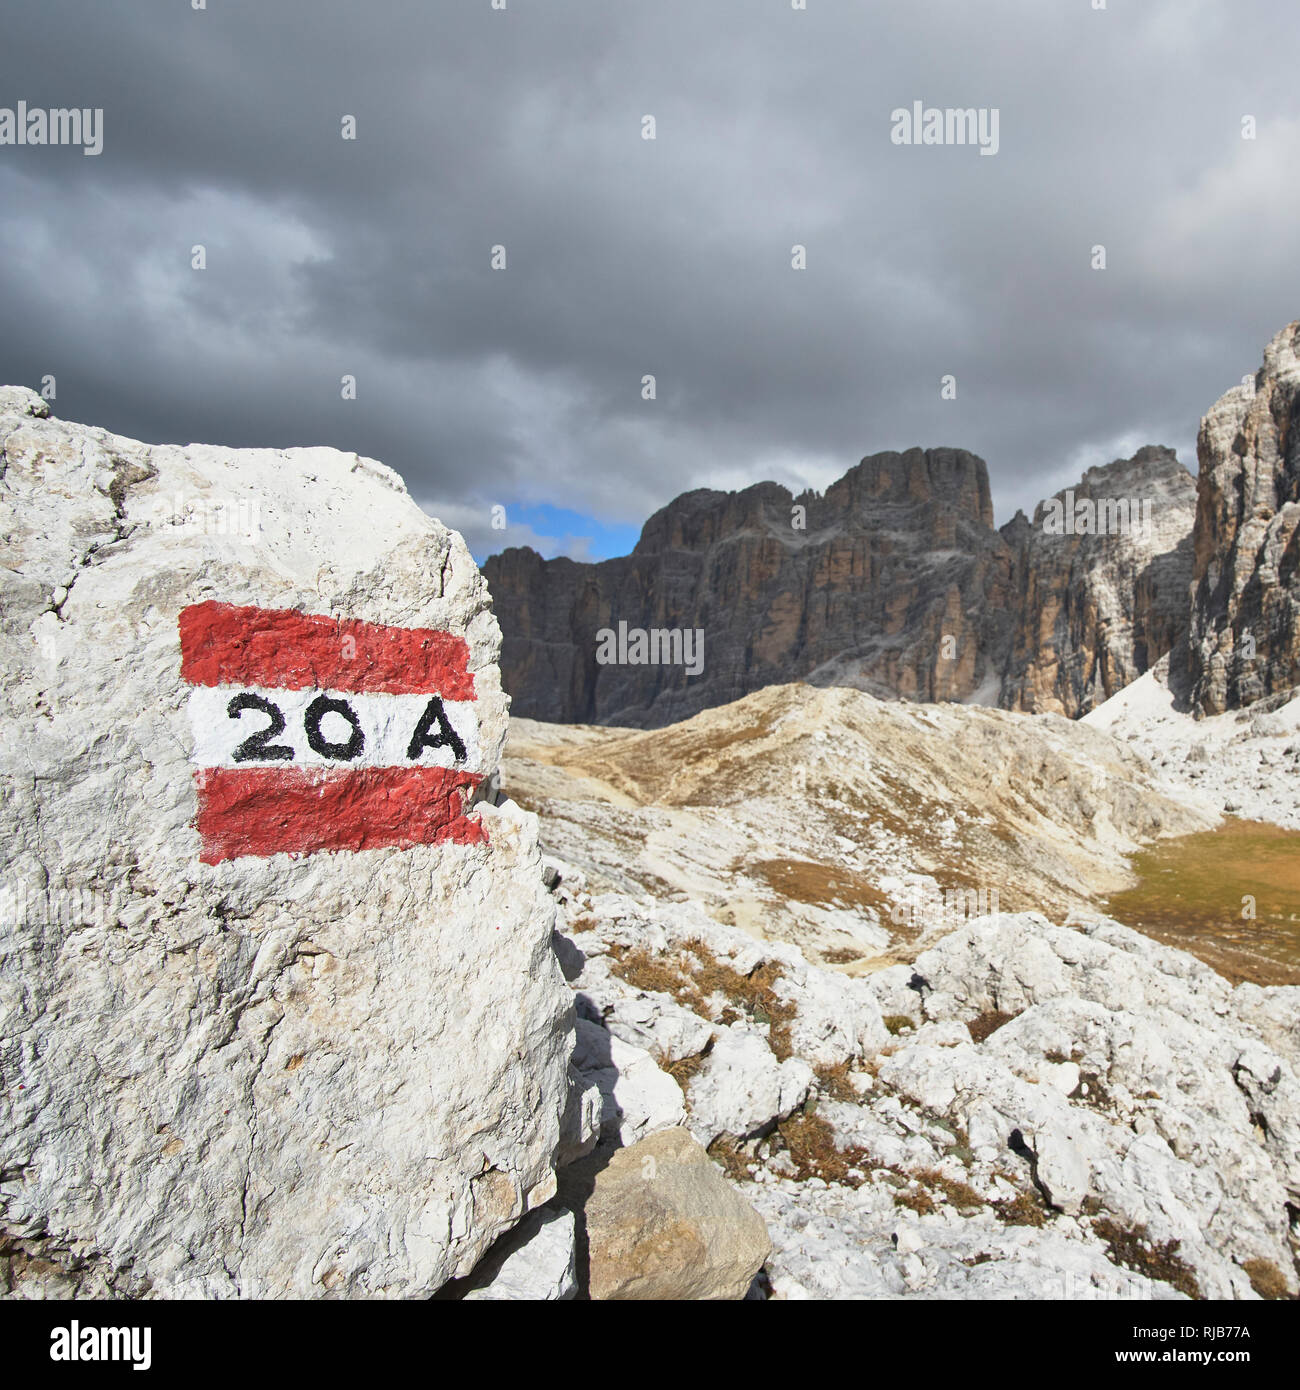 20 Eine Route Zeichen und Nummer auf einen Stein, in der Nähe der Lagazuoi, Belluno, Venetien, Dolomiten Stockfoto